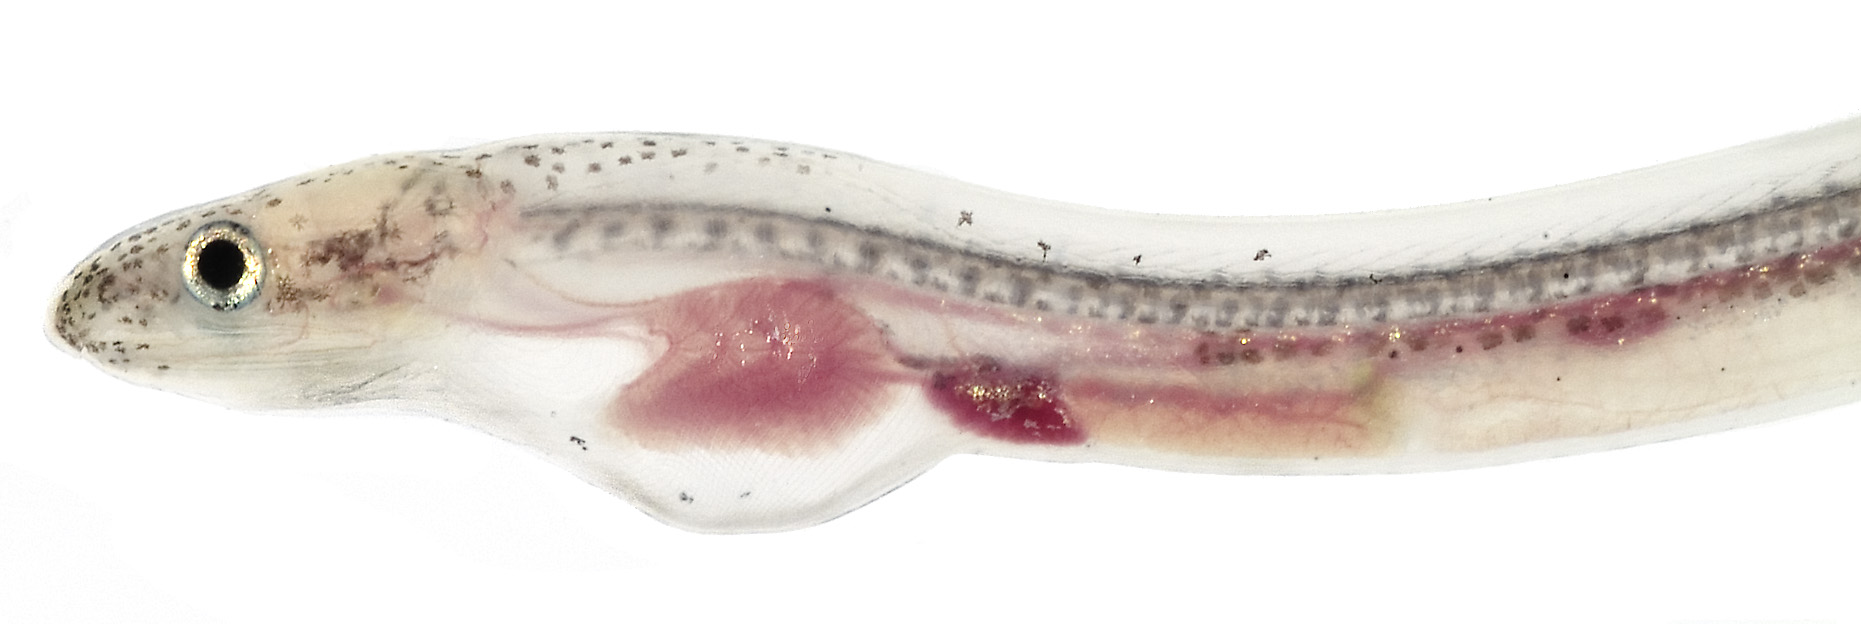 Worm eel head wallpaper